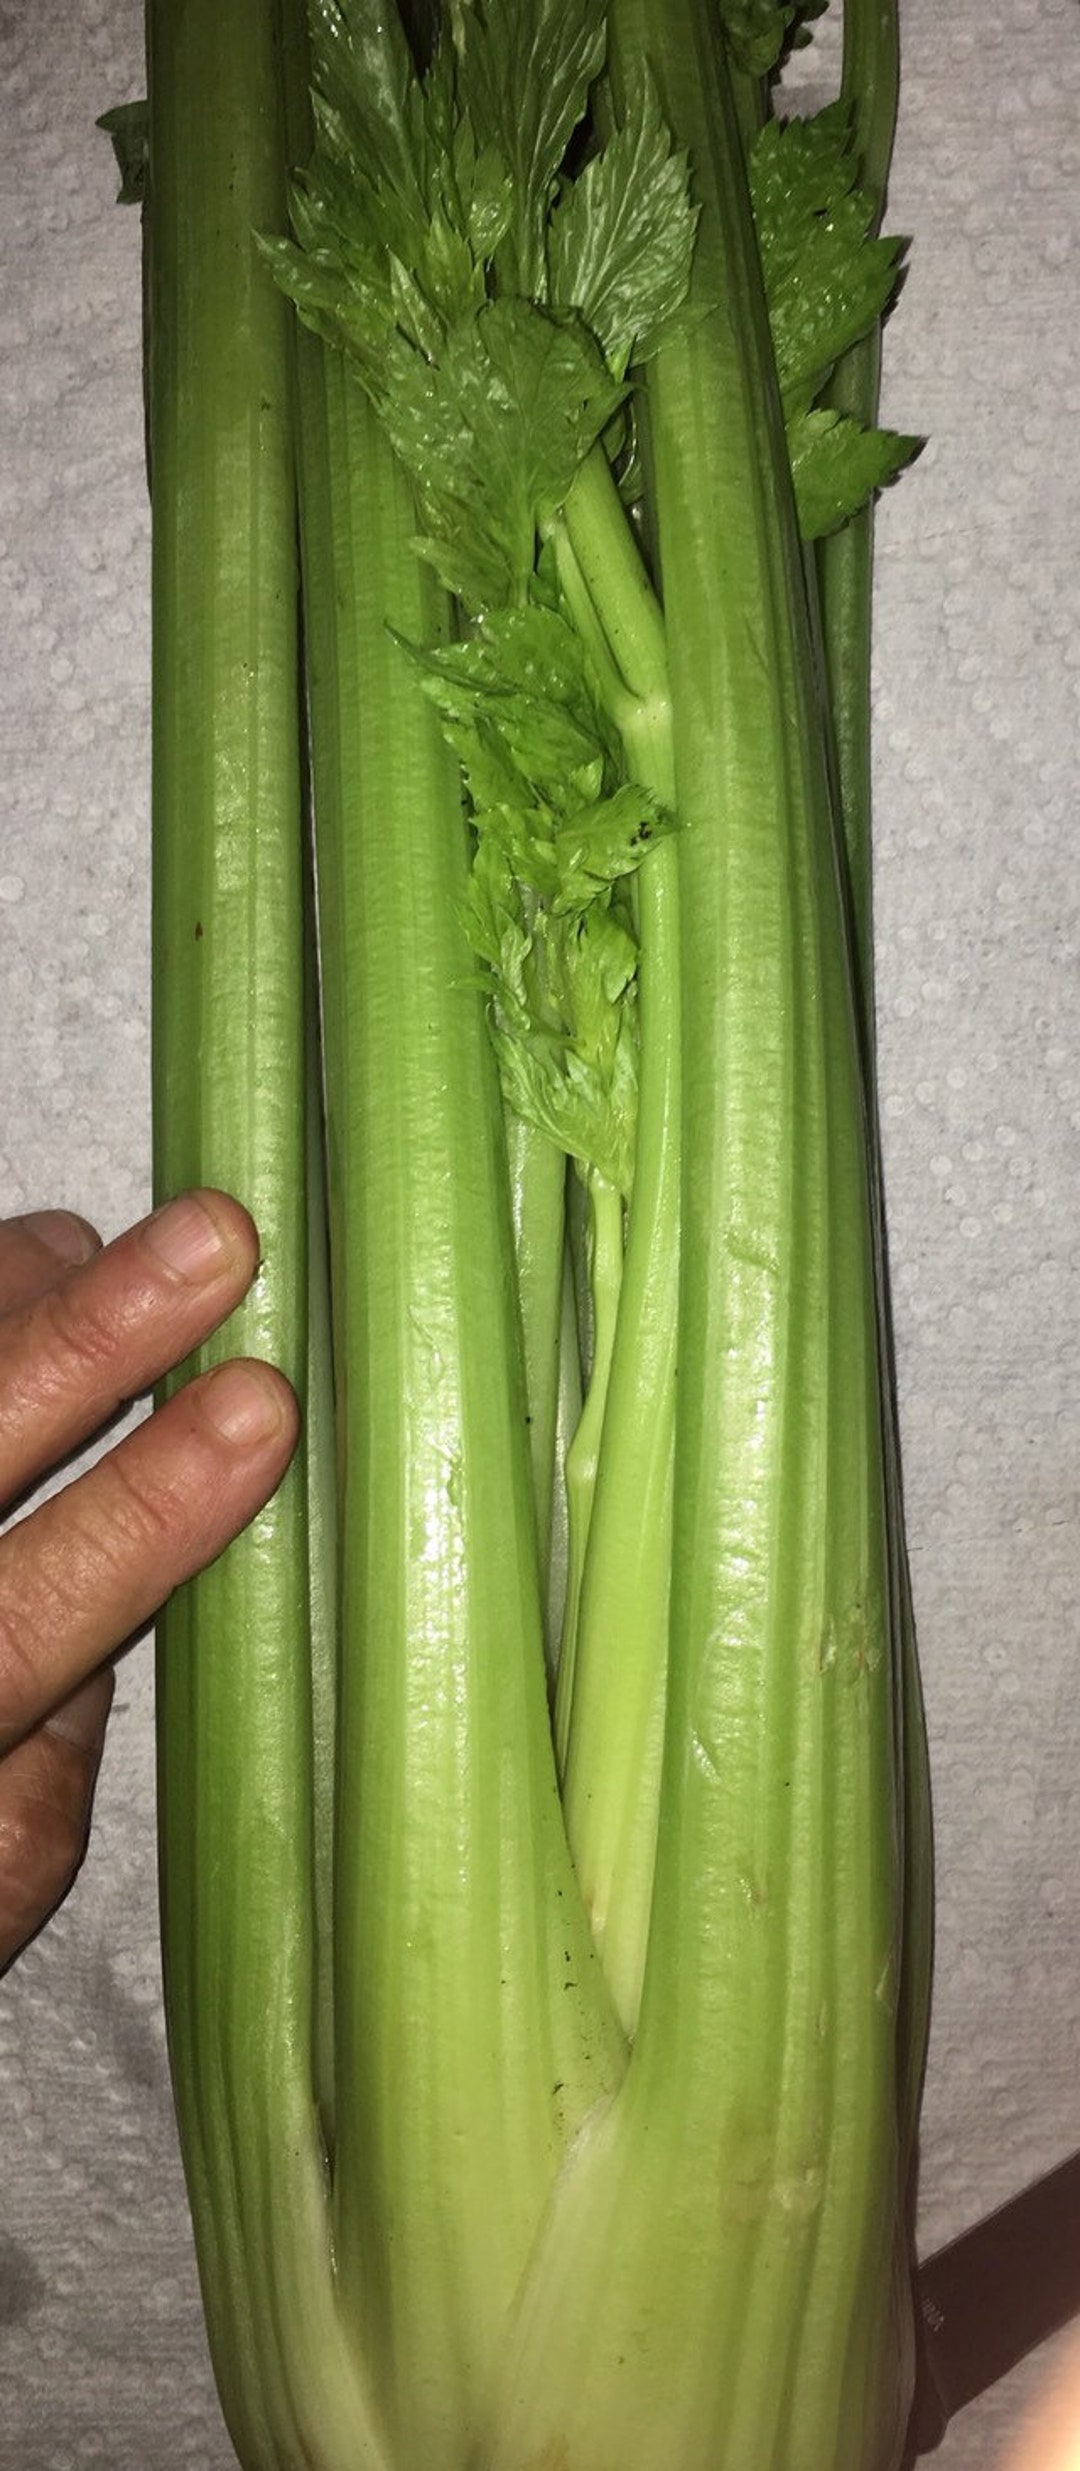 Organic Tall Utah 52-70 Celery Long Crisp Stalks an Early